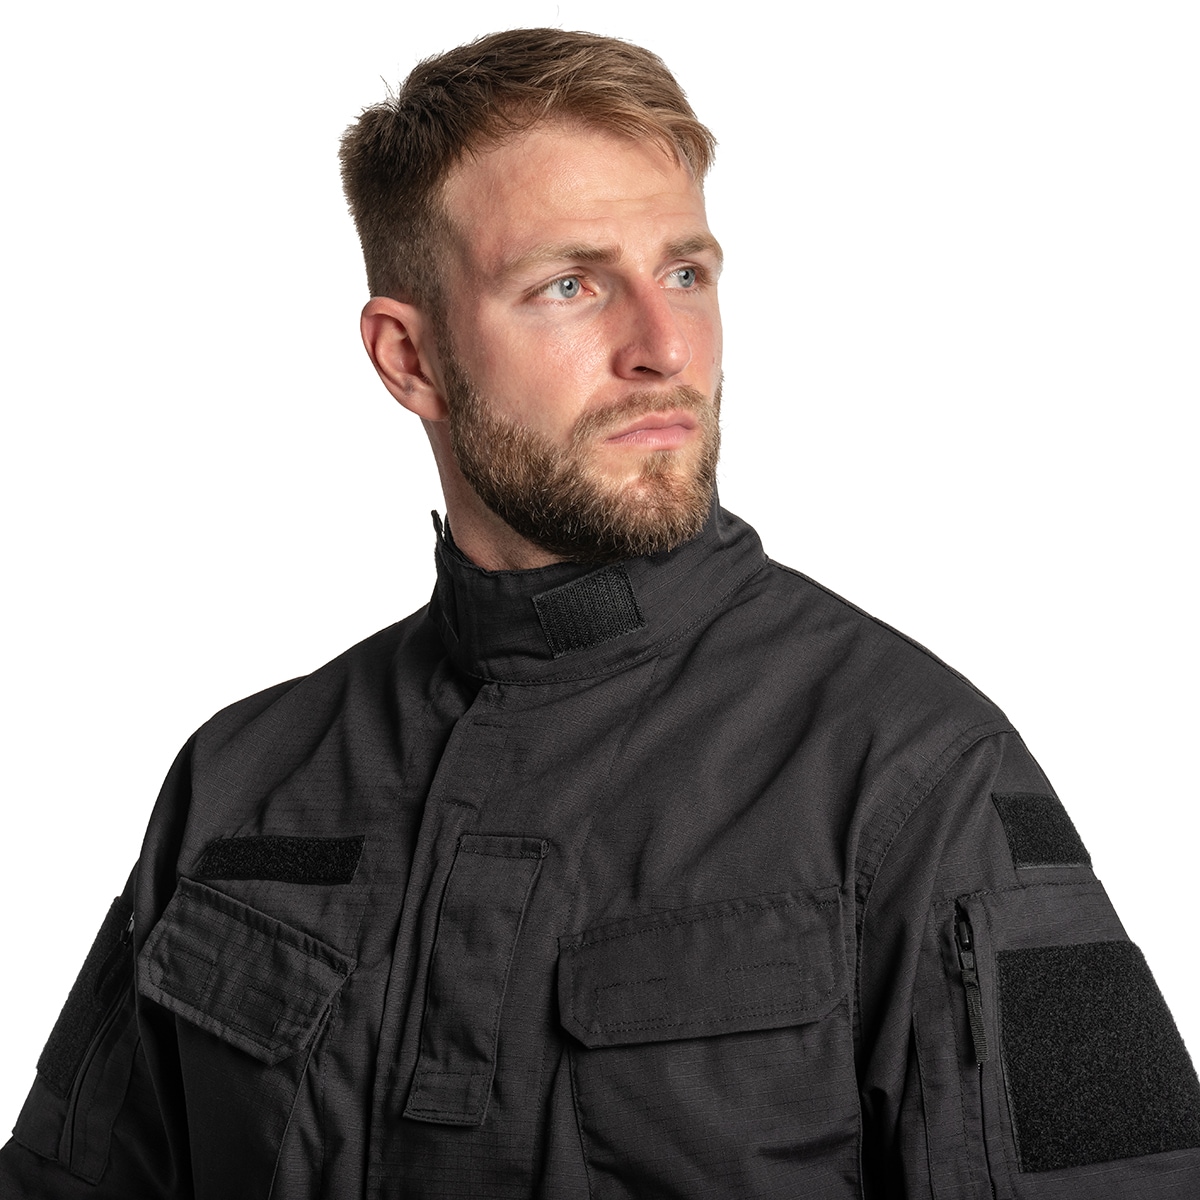 Bluza mundurowa MaxPro-Tech WZ 2010 Rip-Stop - Black